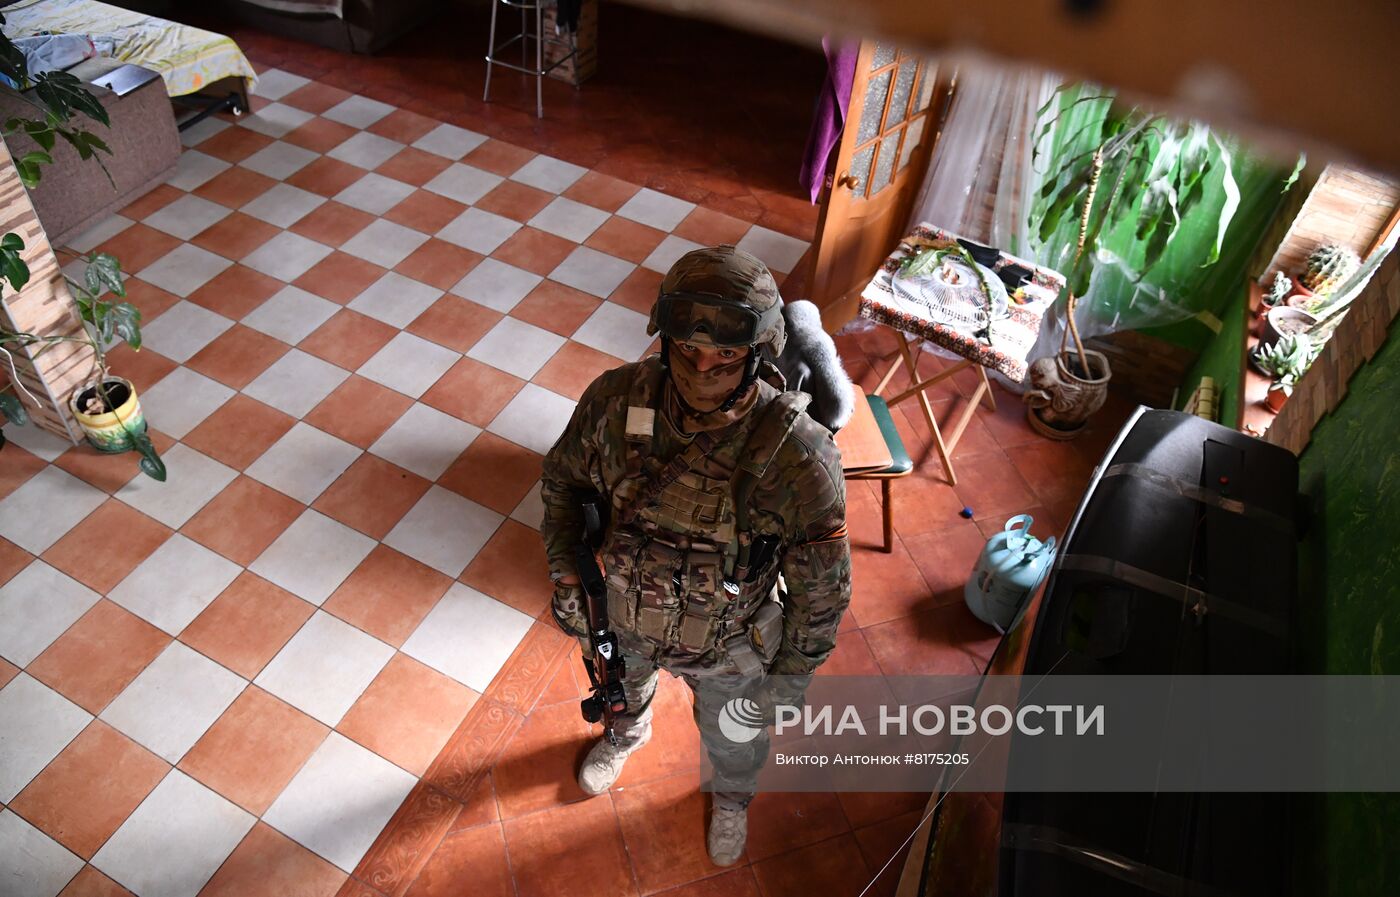 Обнаружение схрона с оружием в Харьковской области